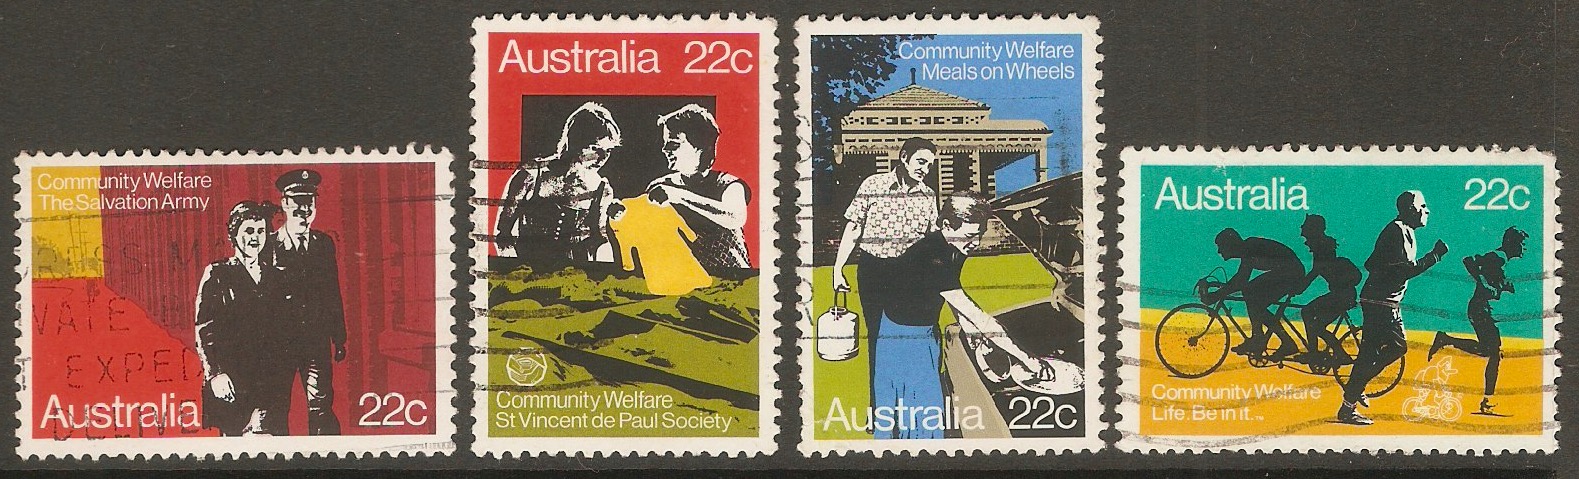 Australia 1980 Community Welfare set. SG748-SG751.